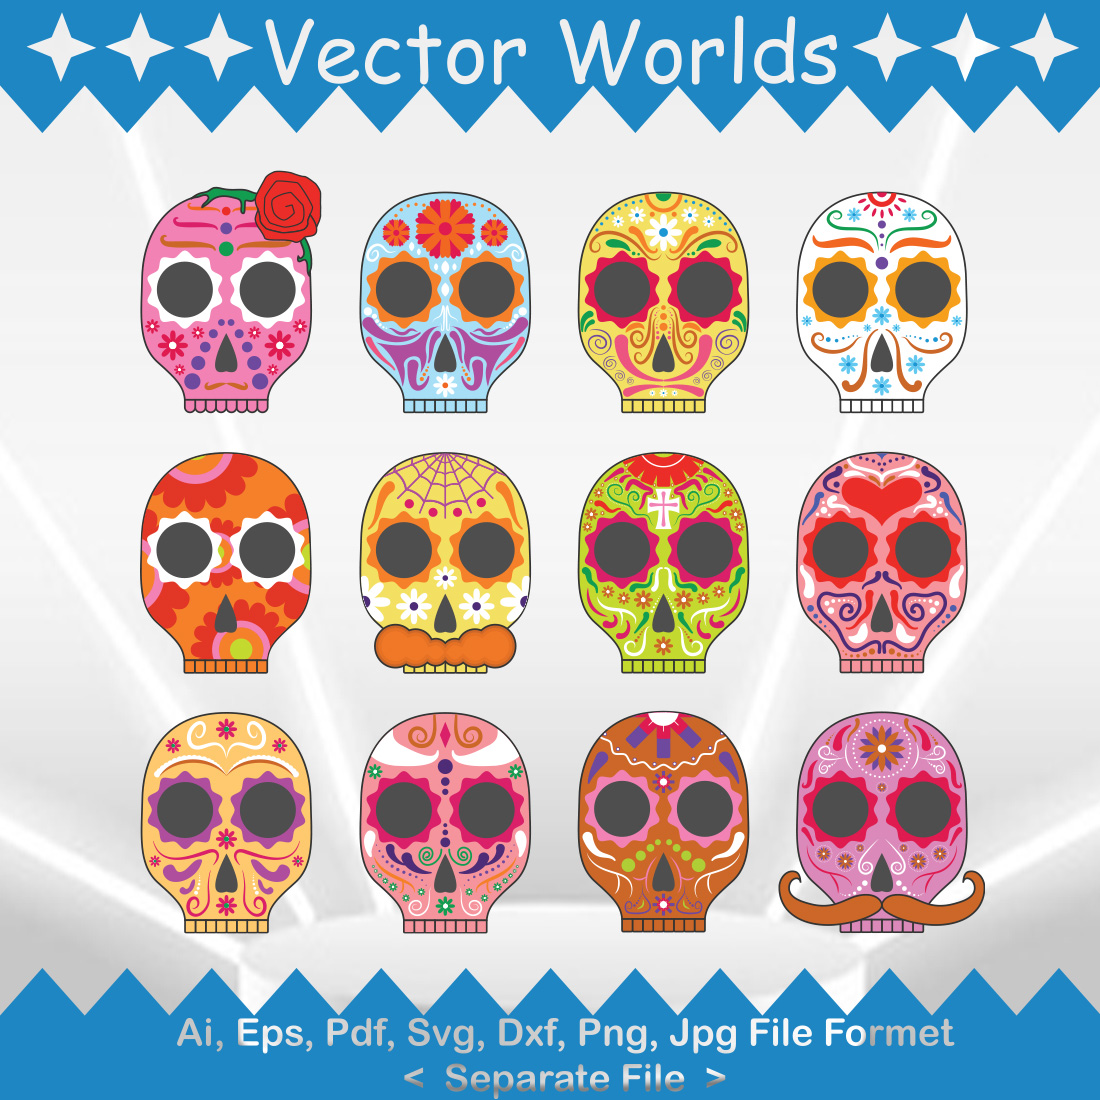 Día de los Muertos SVG Vector Design cover image.